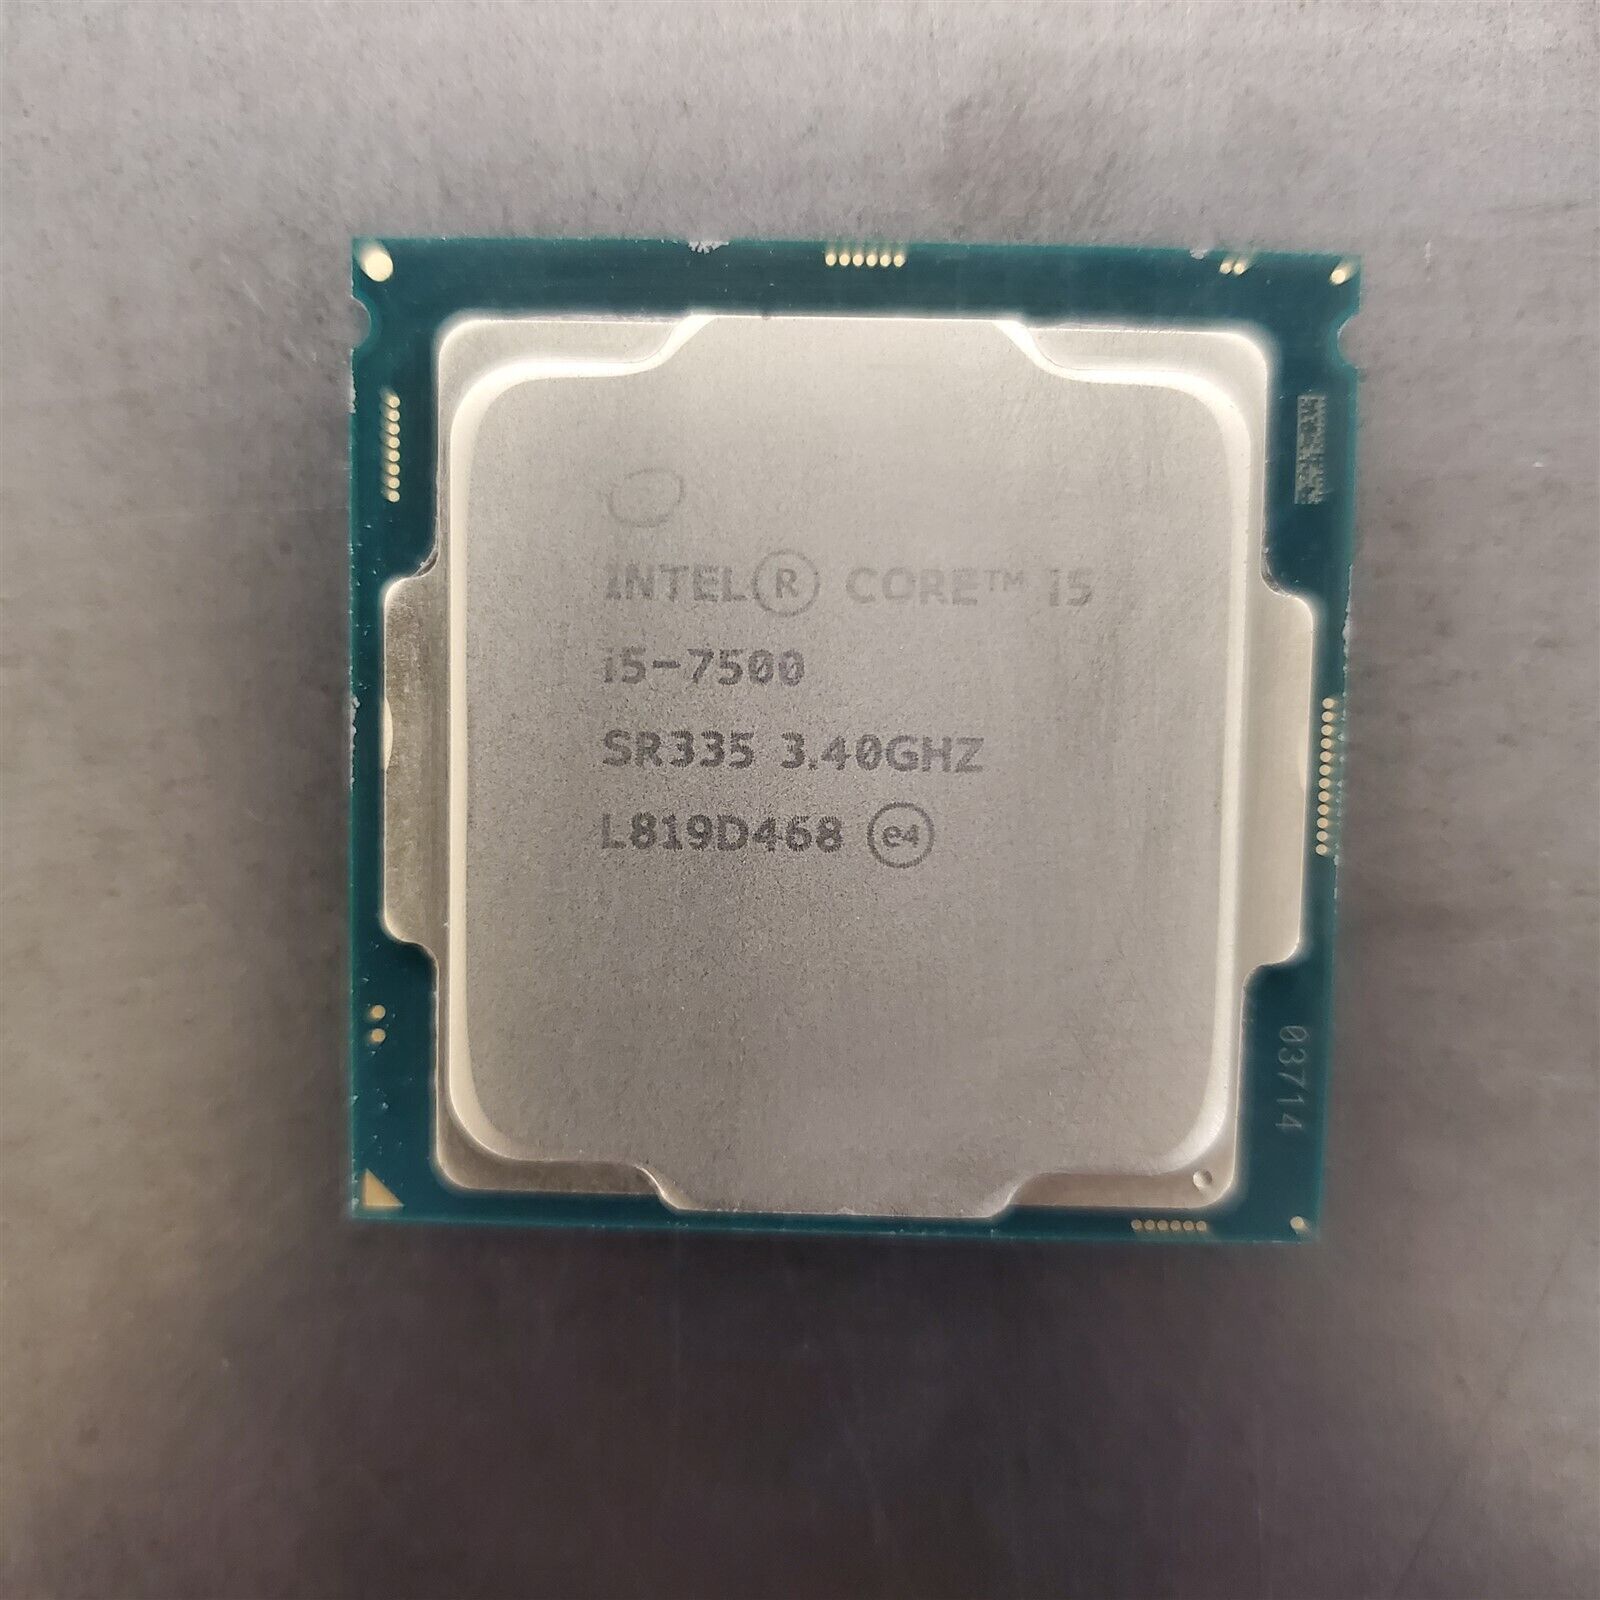 Intel Core i5-7500 3.40GHz LGA1151 Quad Core SR335 Desktop Processor